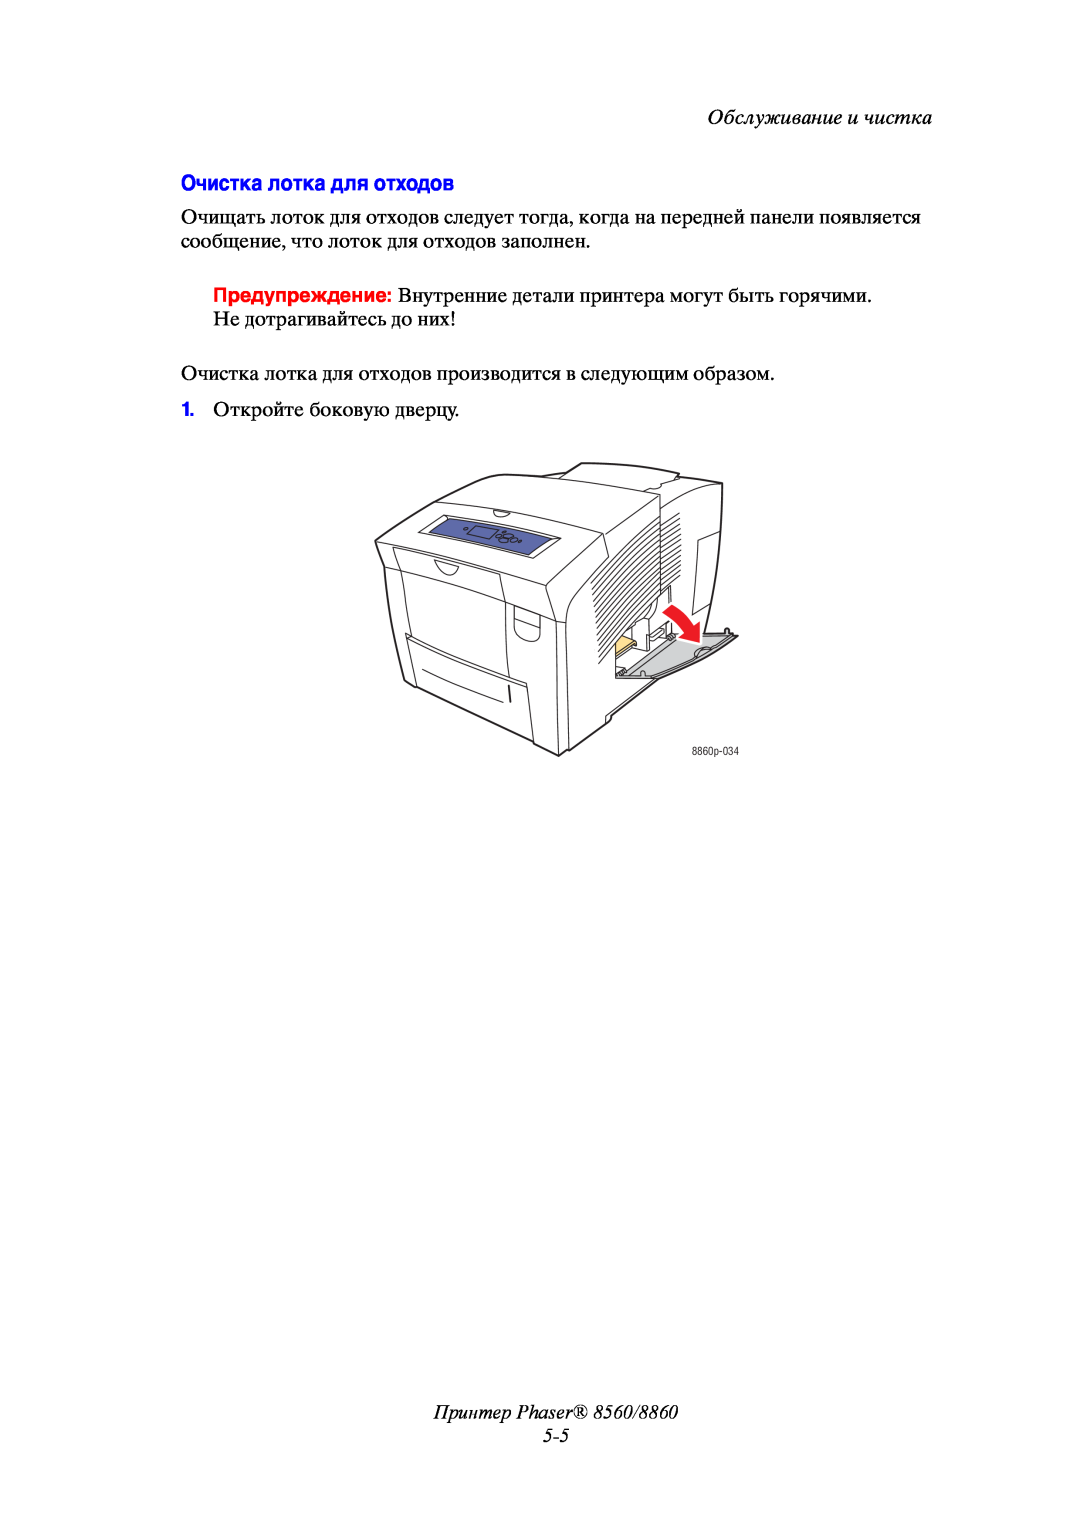 Xerox manual Очистка лотка для отходов, Принтер Phaser 8560/8860 5-5, Обслуживание и чистка, 1. Откройте боковую дверцу 